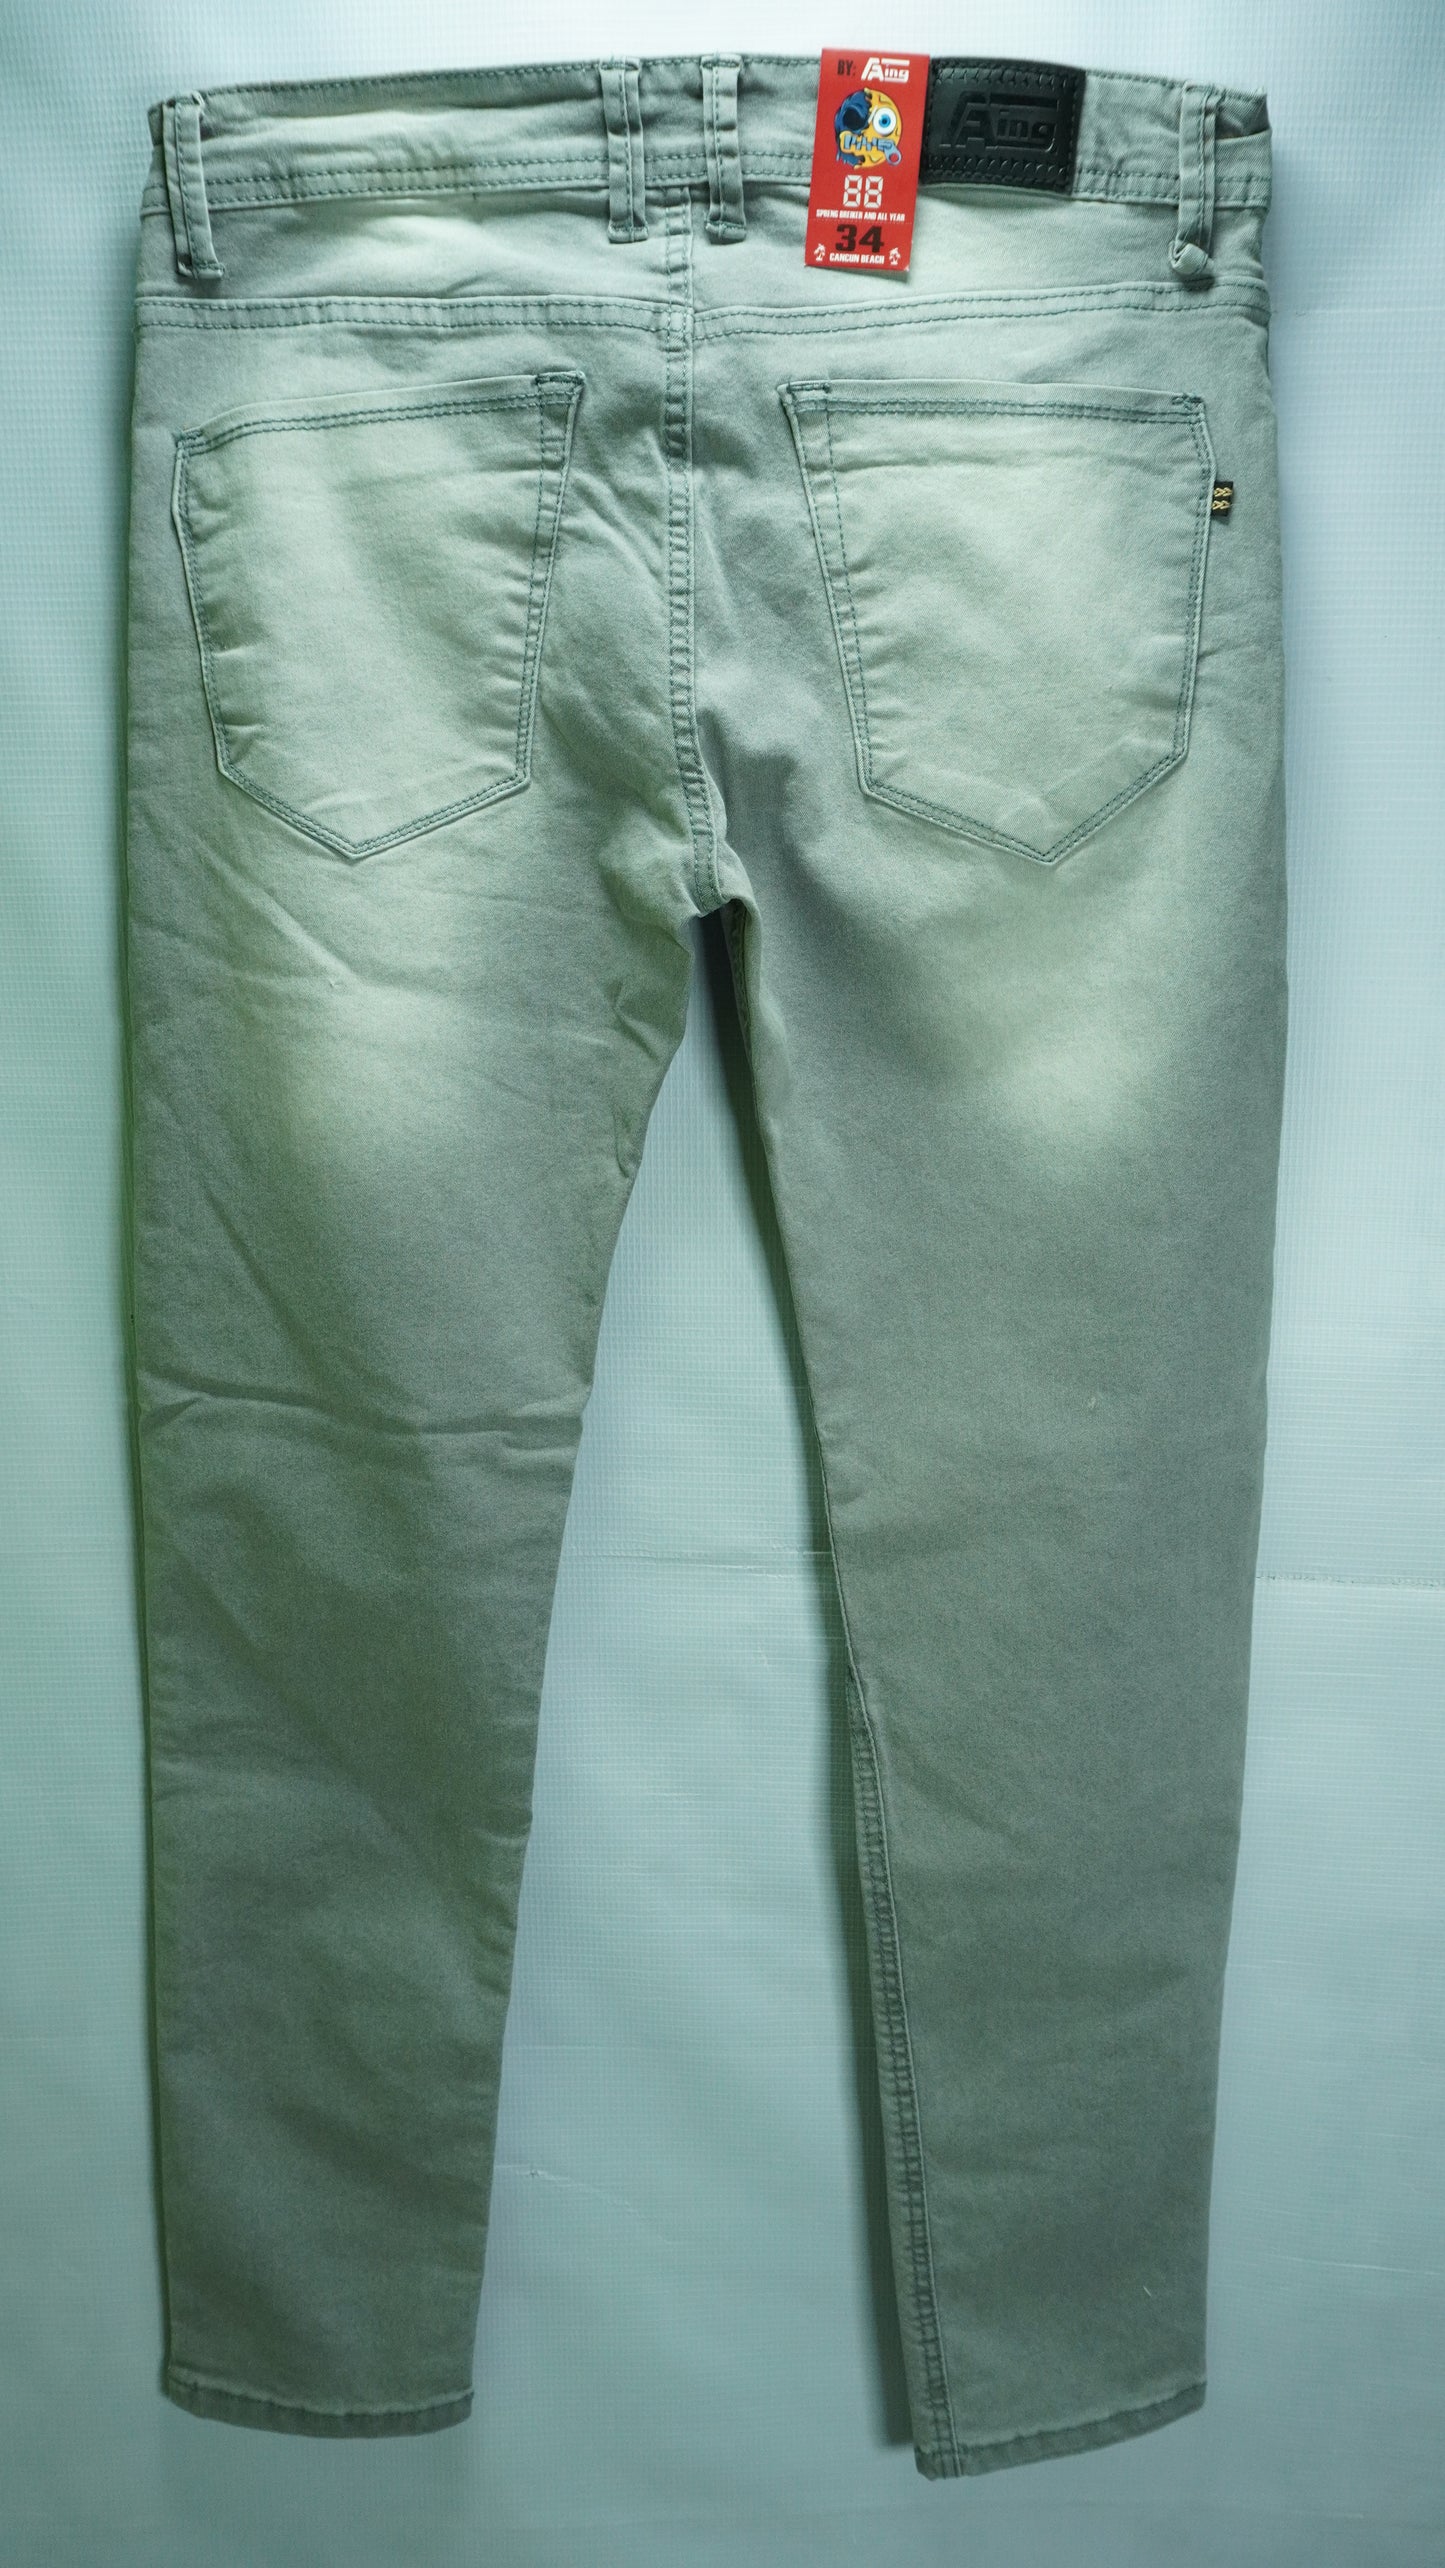 Pantalon de mezclilla gris claro